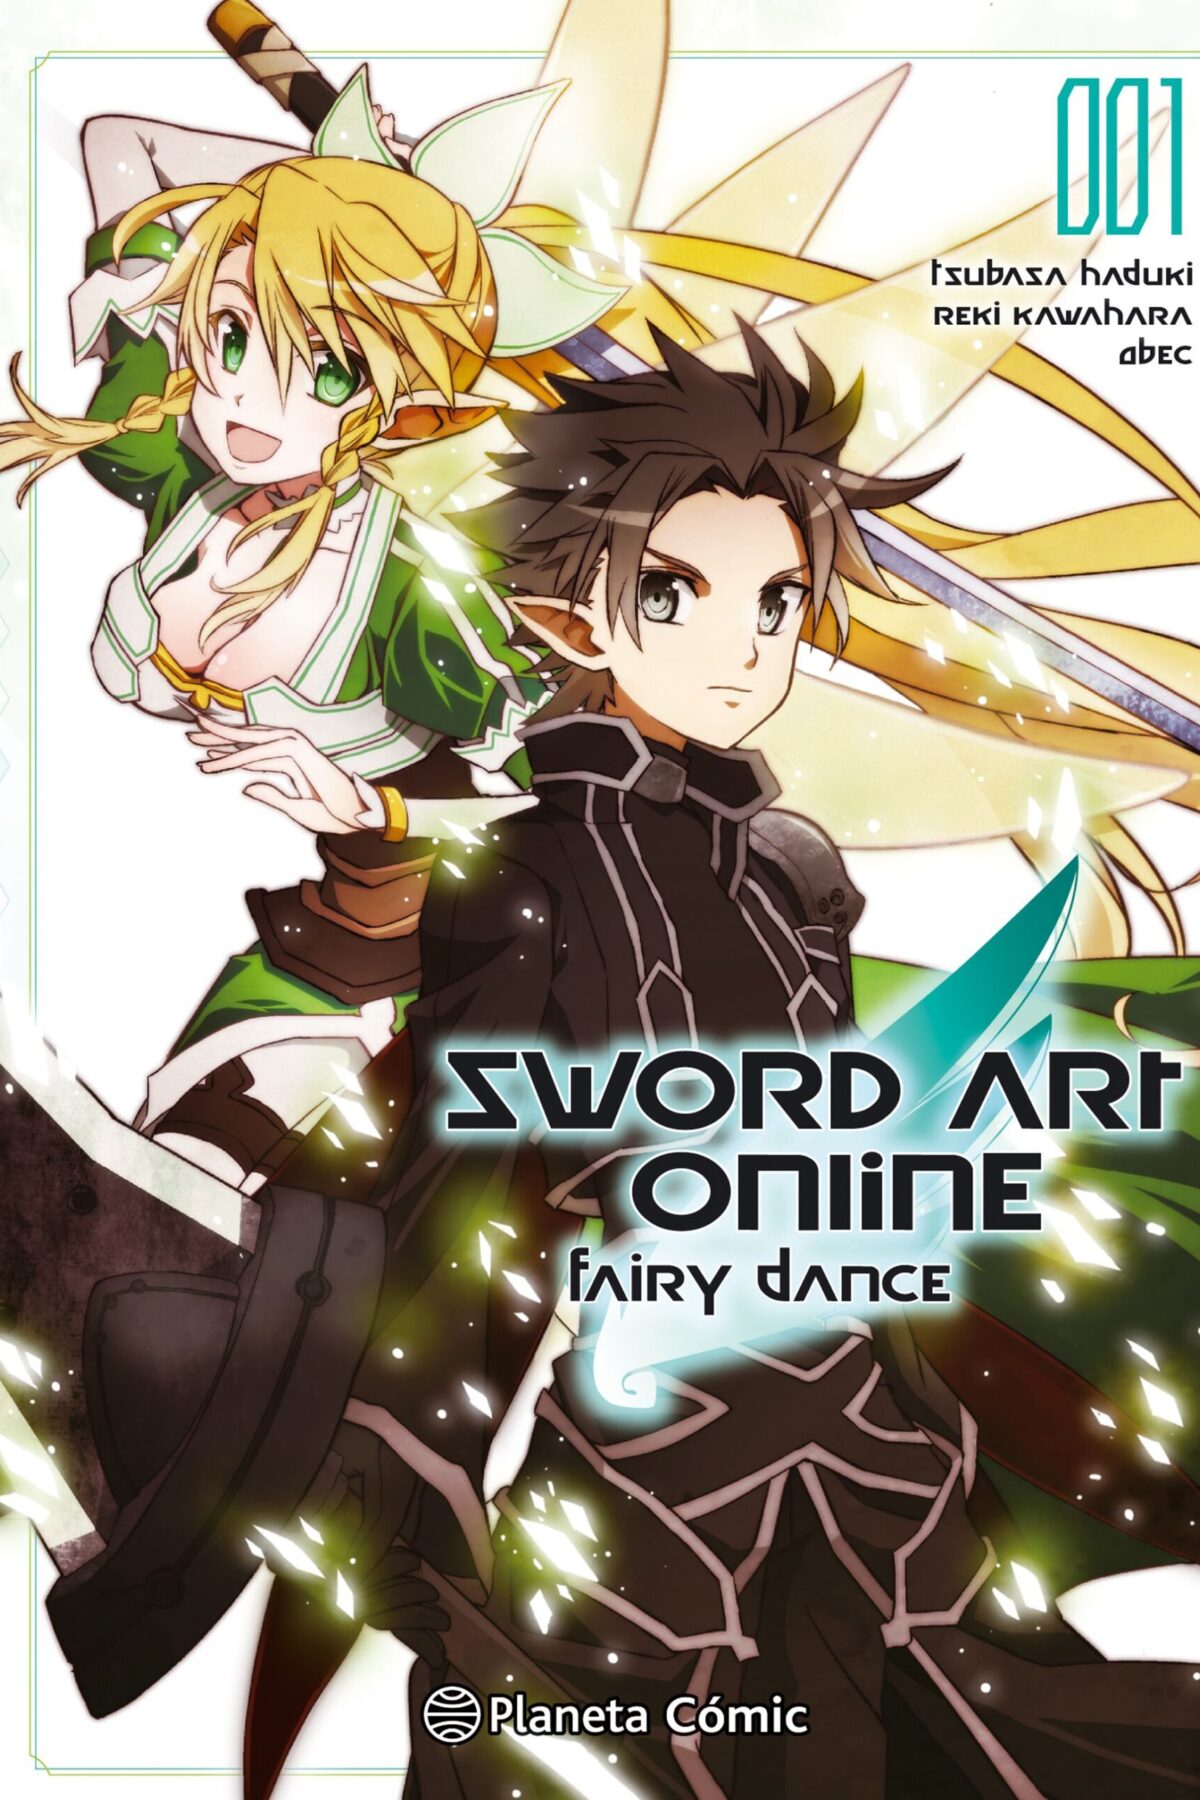 Manga Sword Art Online Fairy Dance 01